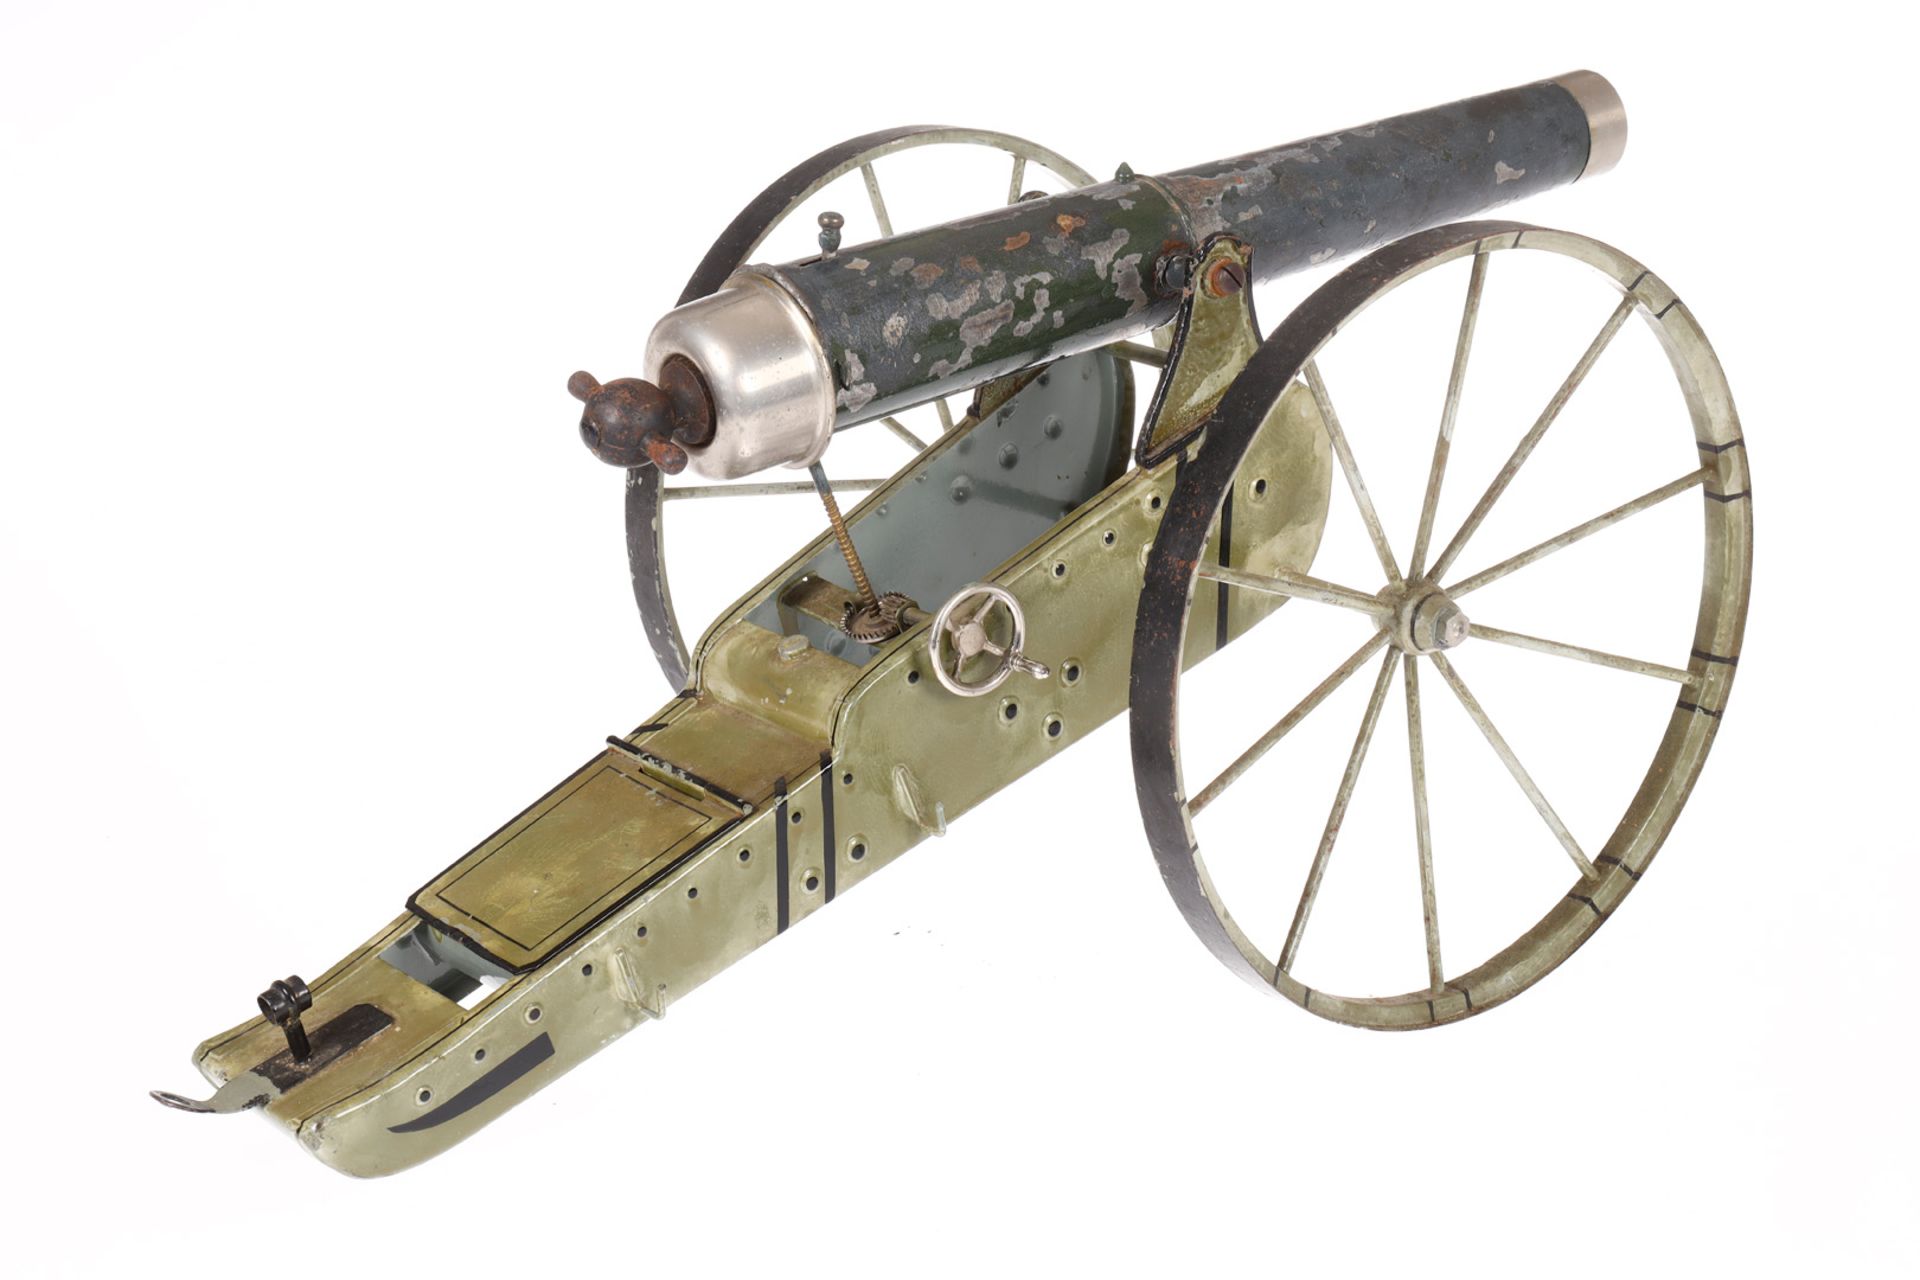 Märklin große Feld-Artillerie Kanone 8007, uralt, handlackiert, mit Handrad für Zieleinstellung, - Bild 2 aus 4